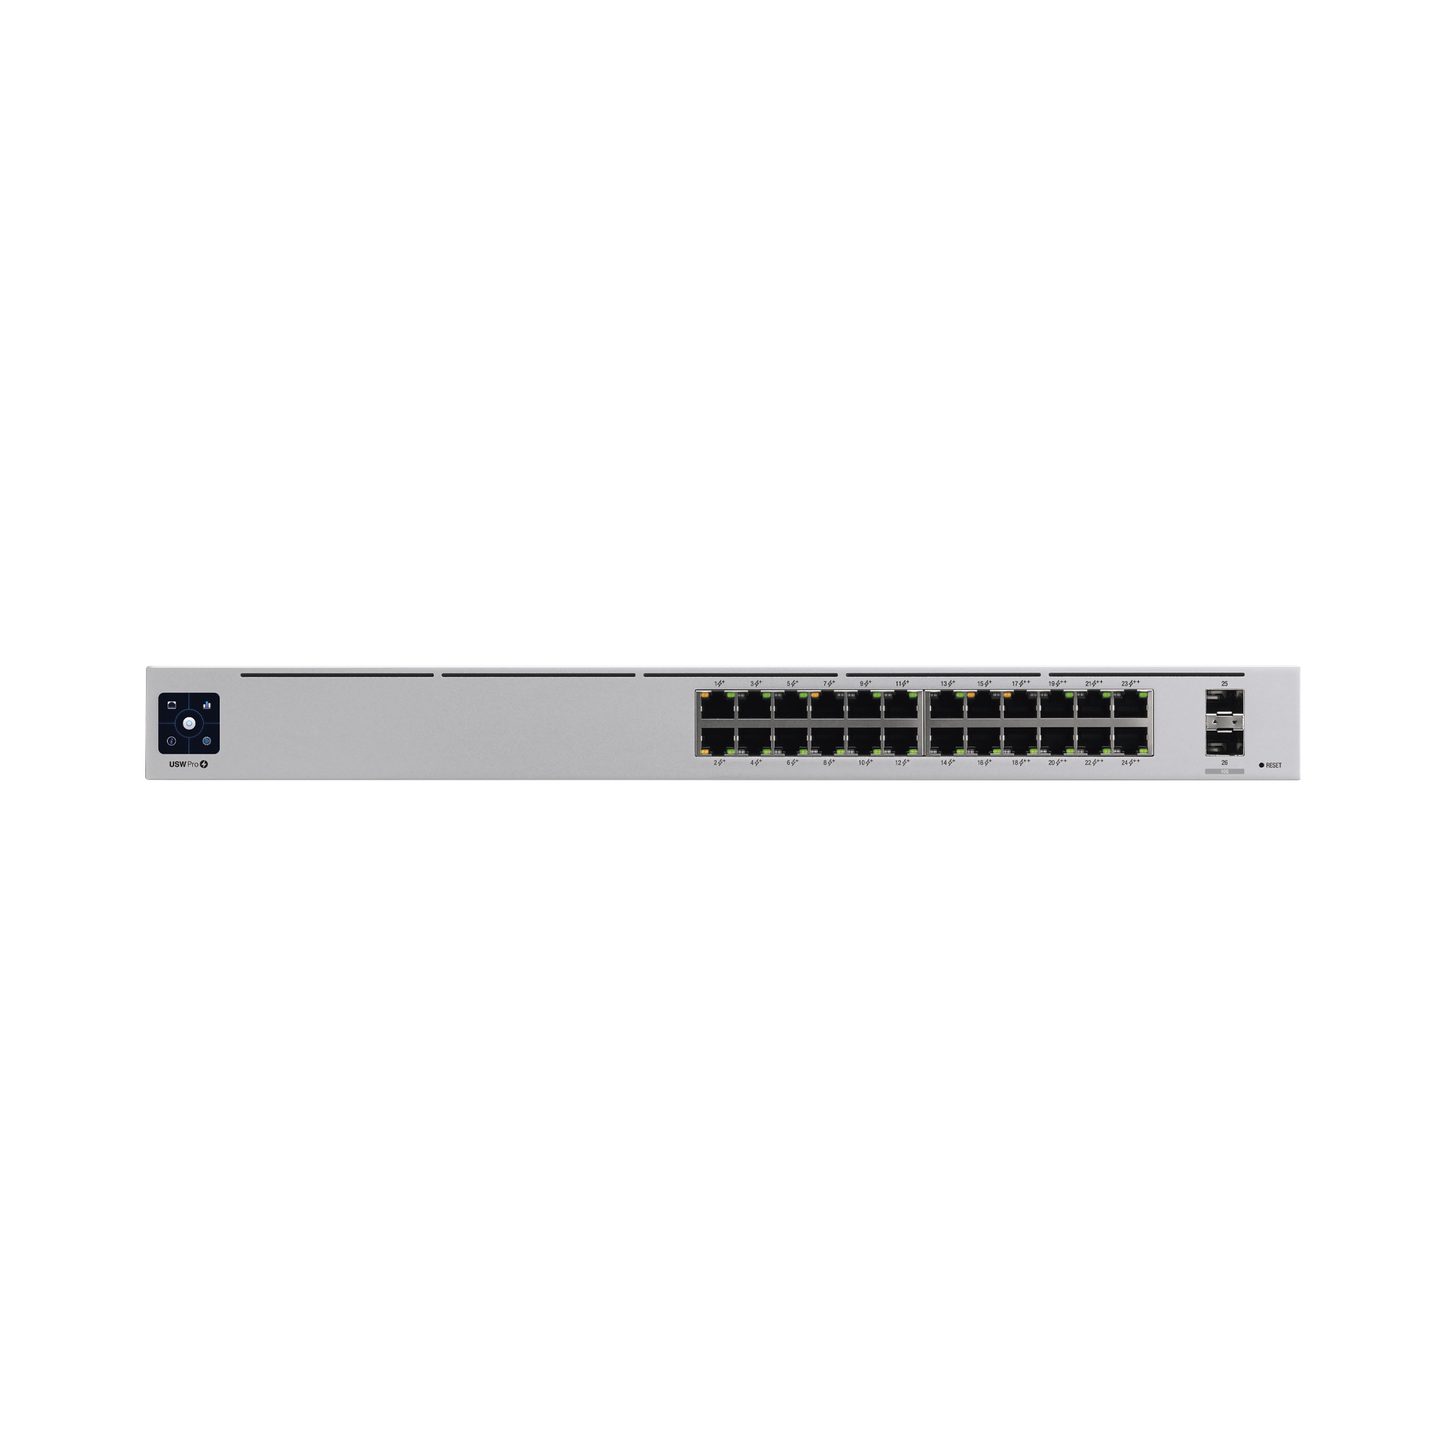 UniFi Switch USW-Pro-24-POE Gen2, con funciones capa 3, de 24 puertos PoE 802.3at/bt + 2 puertos 1/10G SFP+, 400W, pantalla informativa